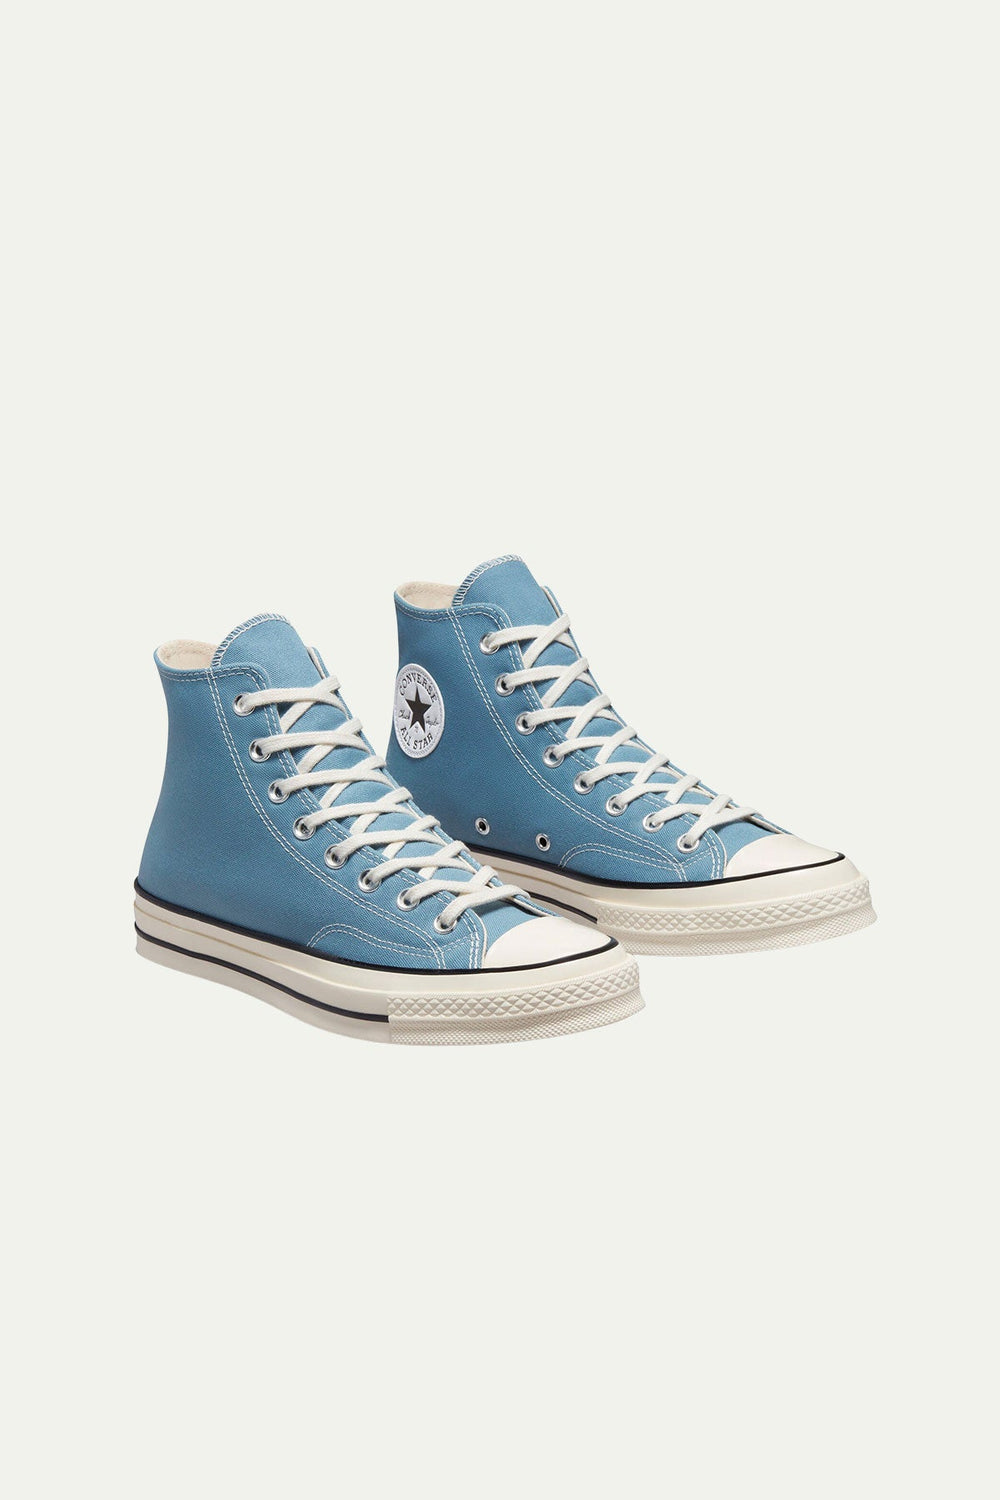 נעלי CHUCK 70 גבוהות בצבע תכלת - Converse